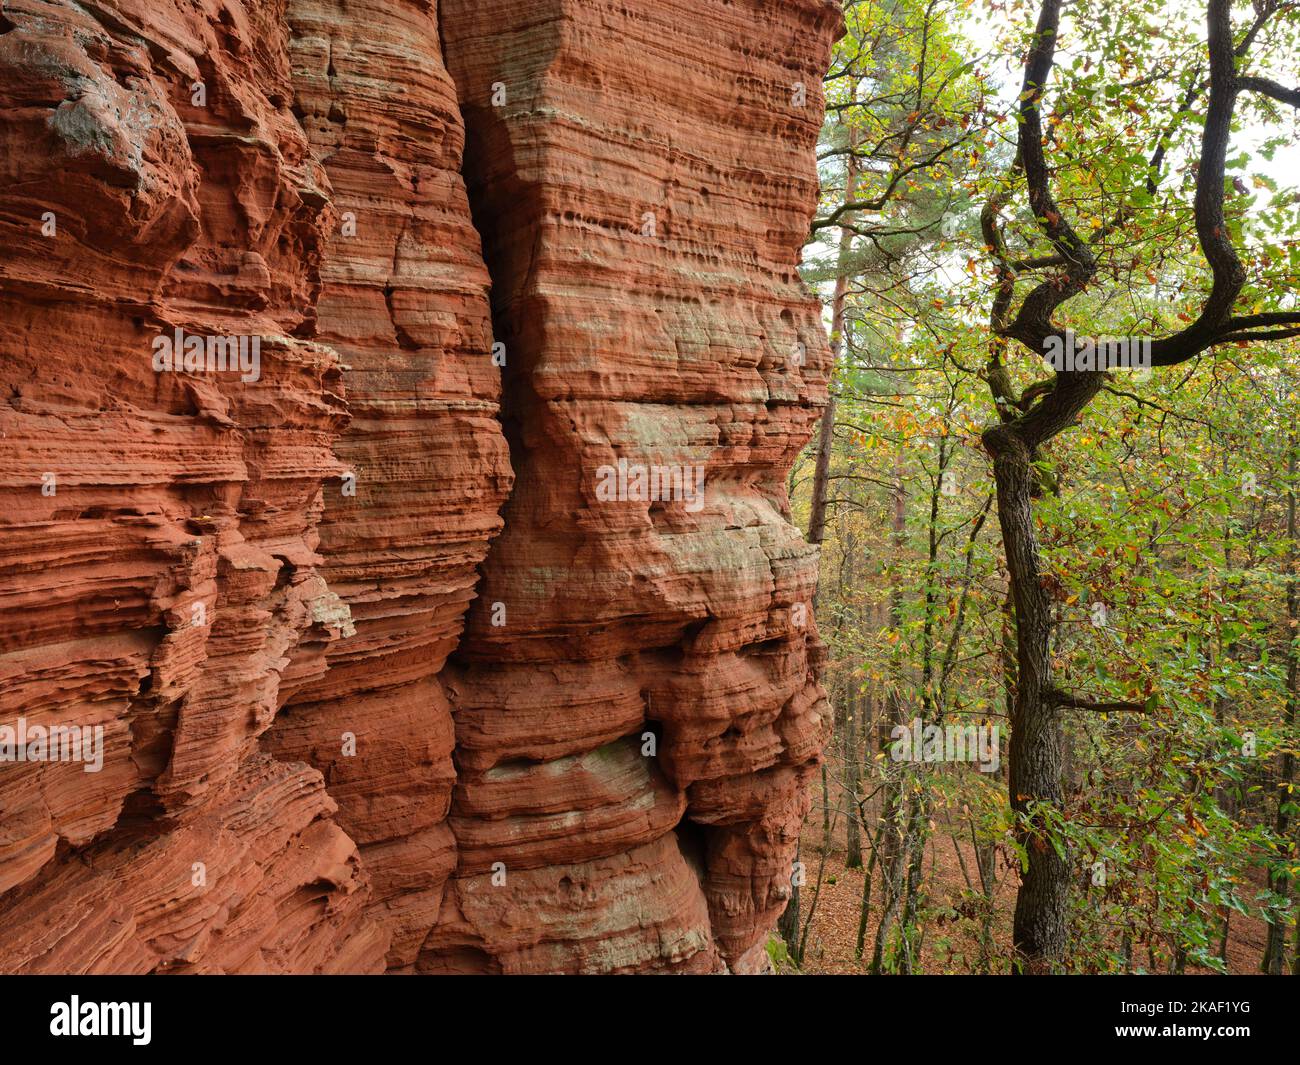 La formazione rocciosa dell'Altschlossfelsen. Eppenbrunn, Renania-Palatinato, Germania. Foto Stock